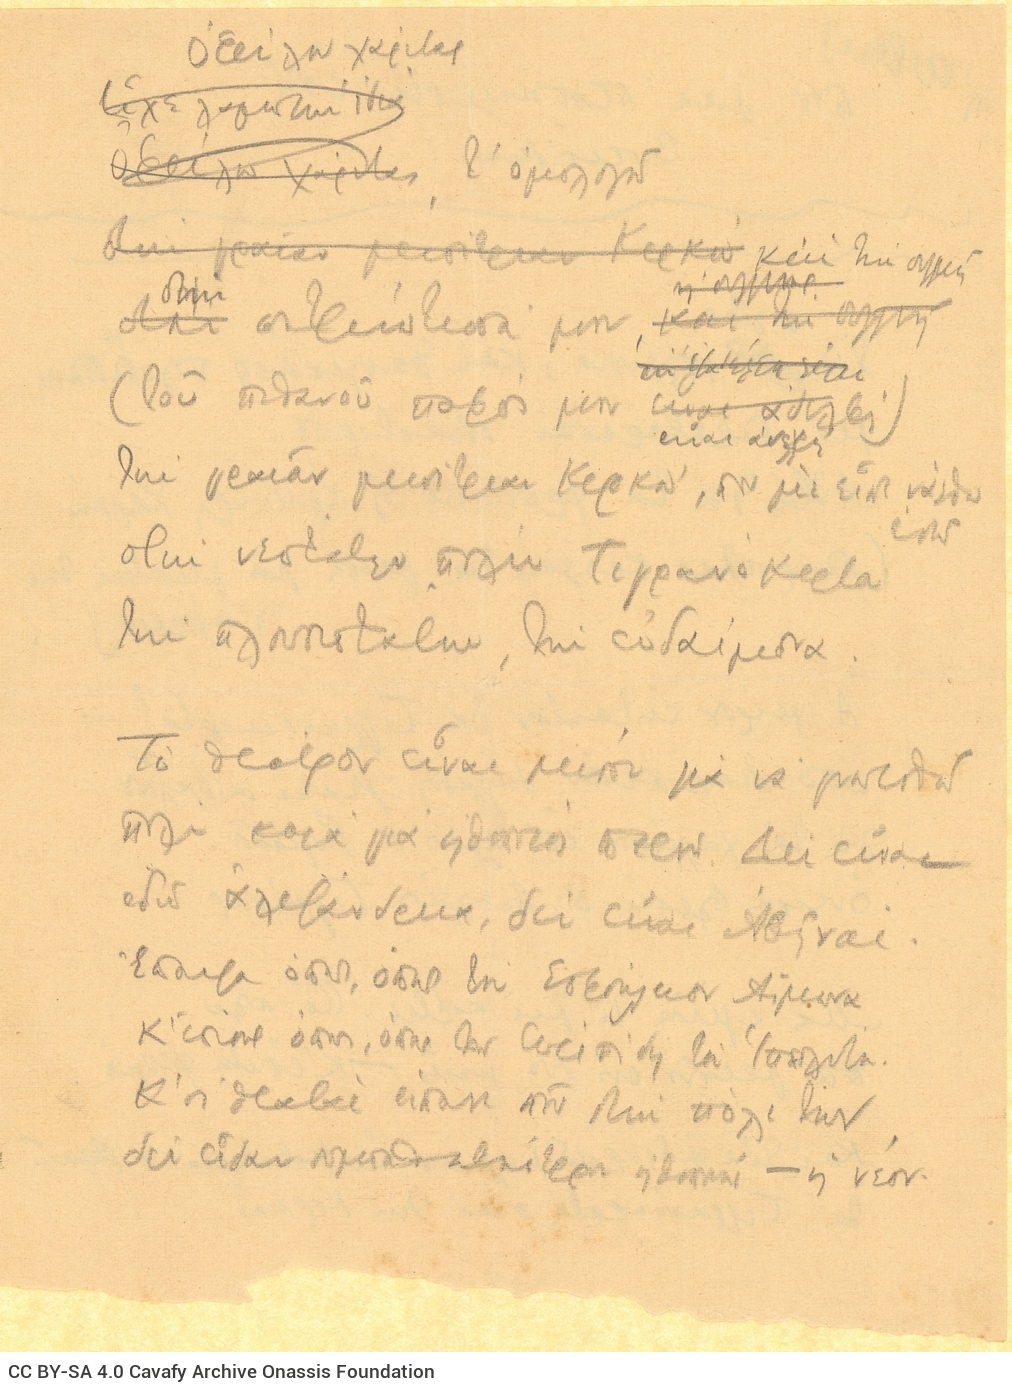 Χειρόγραφο σχεδίασμα του ποιήματος «Τιγρανόκερτα» σε δύο φύλλα. Τ�